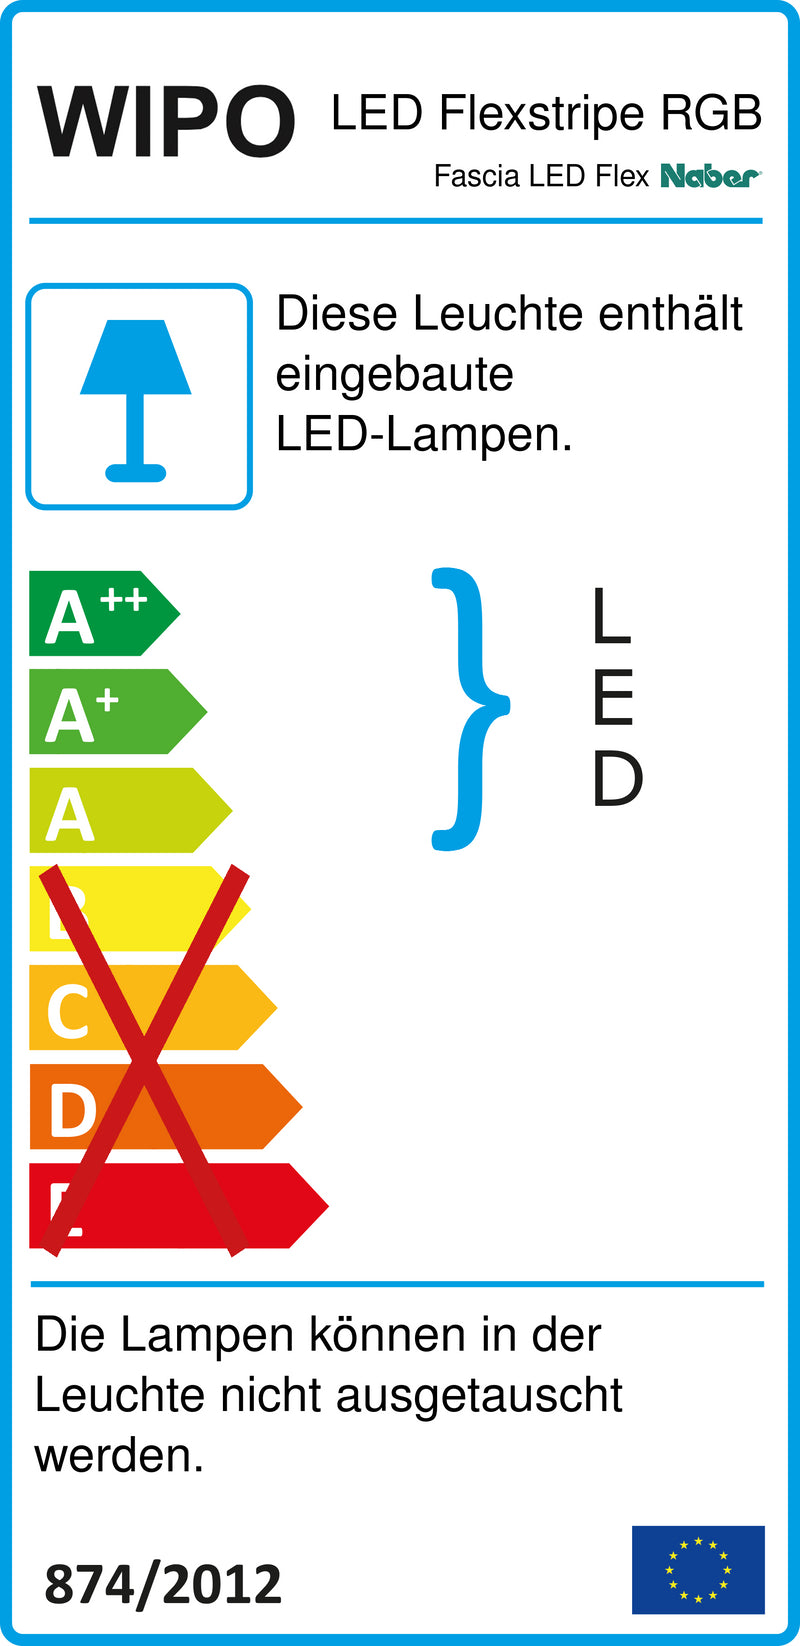 E-Label zu Zeichnung zu Fascia LED Flex Stripes RGB als Variante L 900 mm von Naber GmbH in der Kategorie Lichttechnik in Österreich auf conceptshop.at